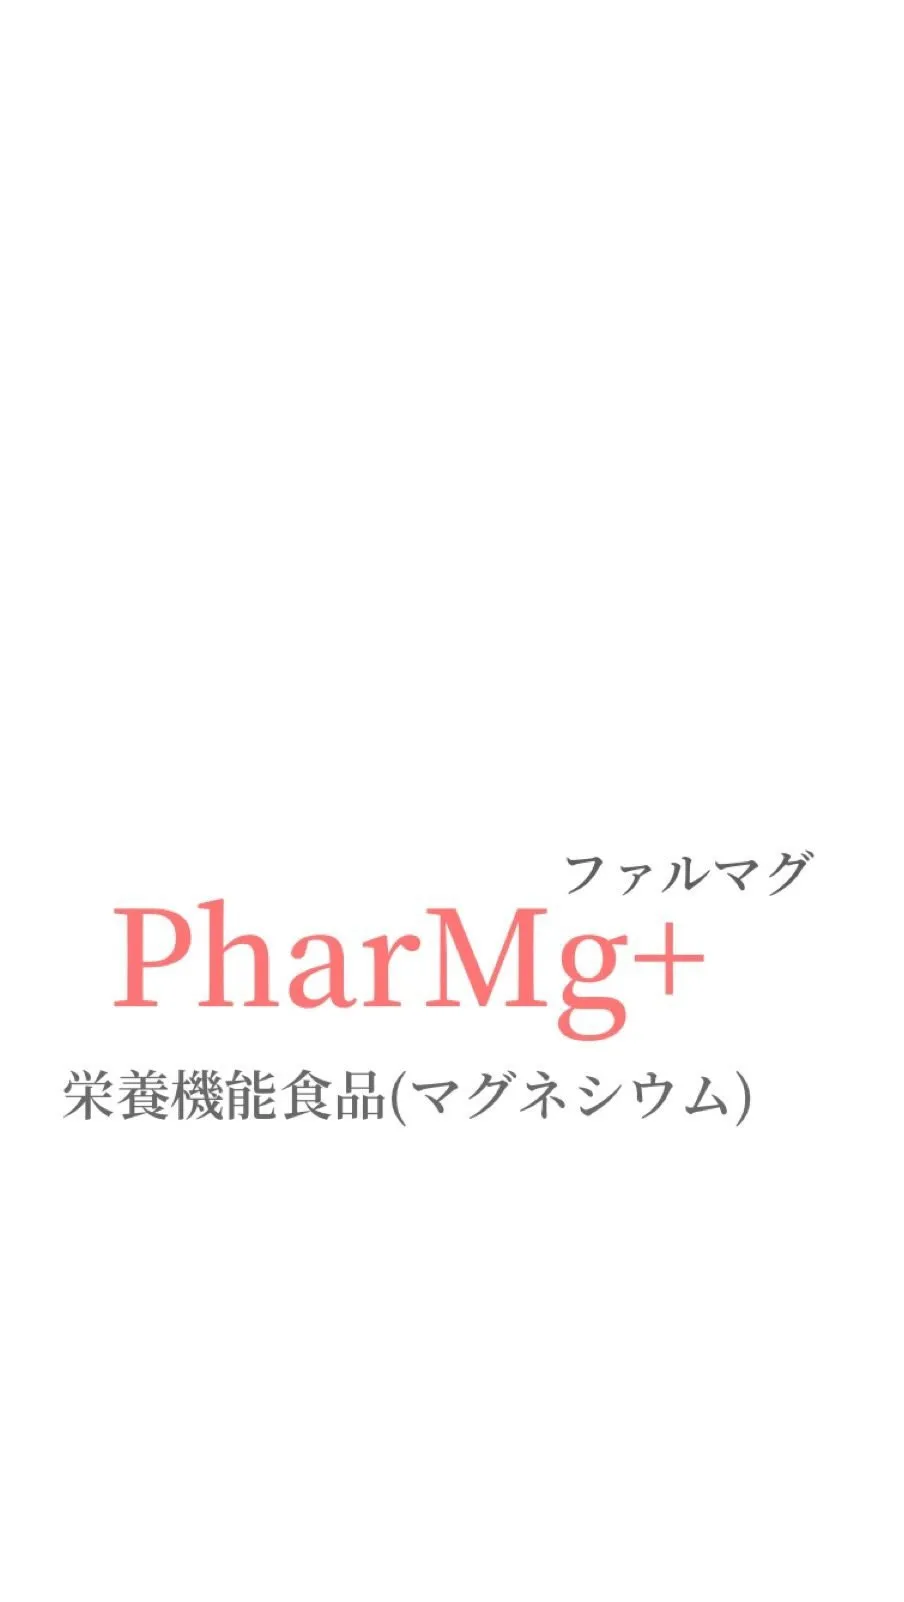 PharMg+ファルマグ